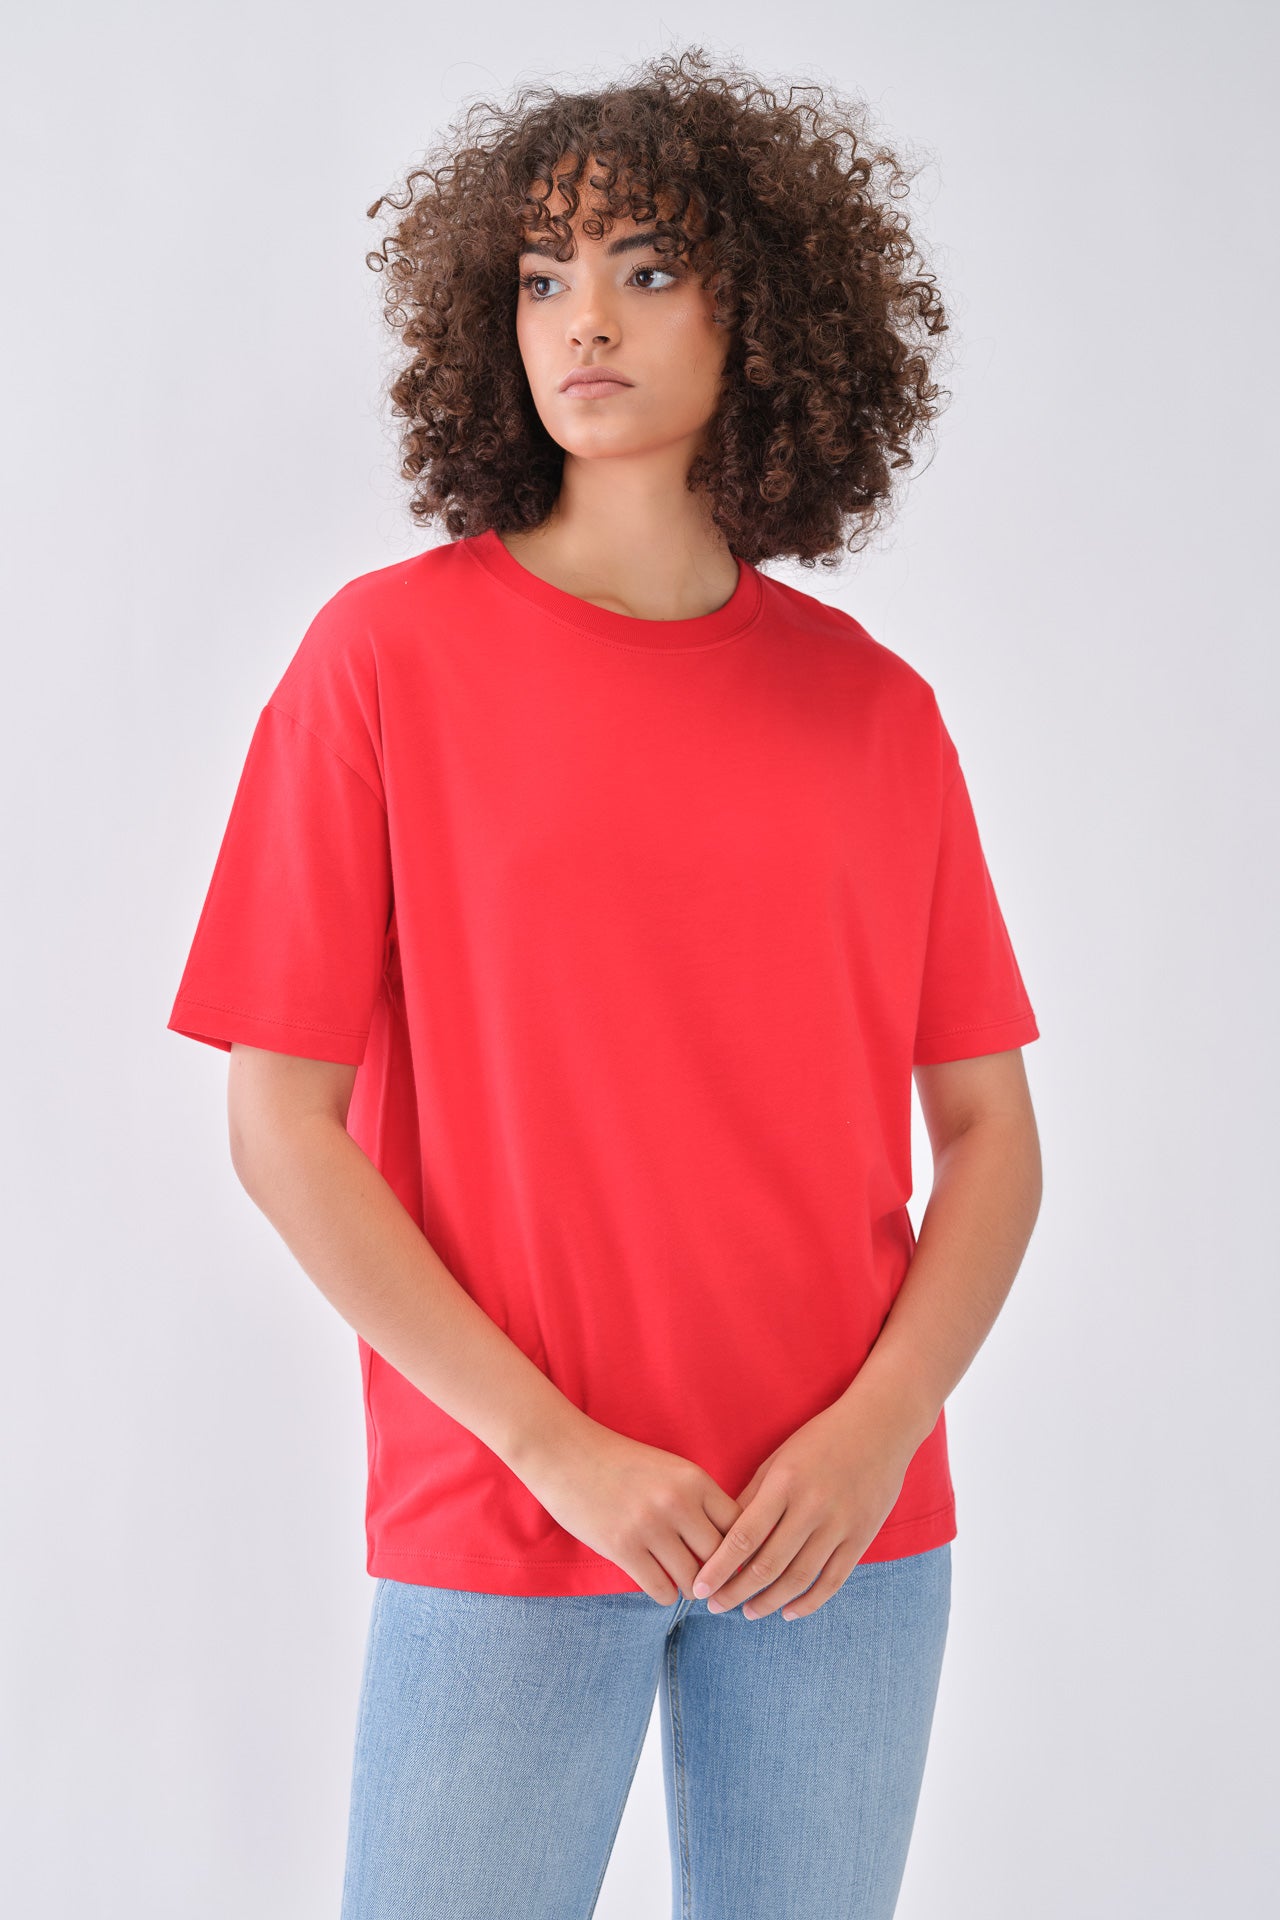 160/400 - T-shirt Oversize Mulher